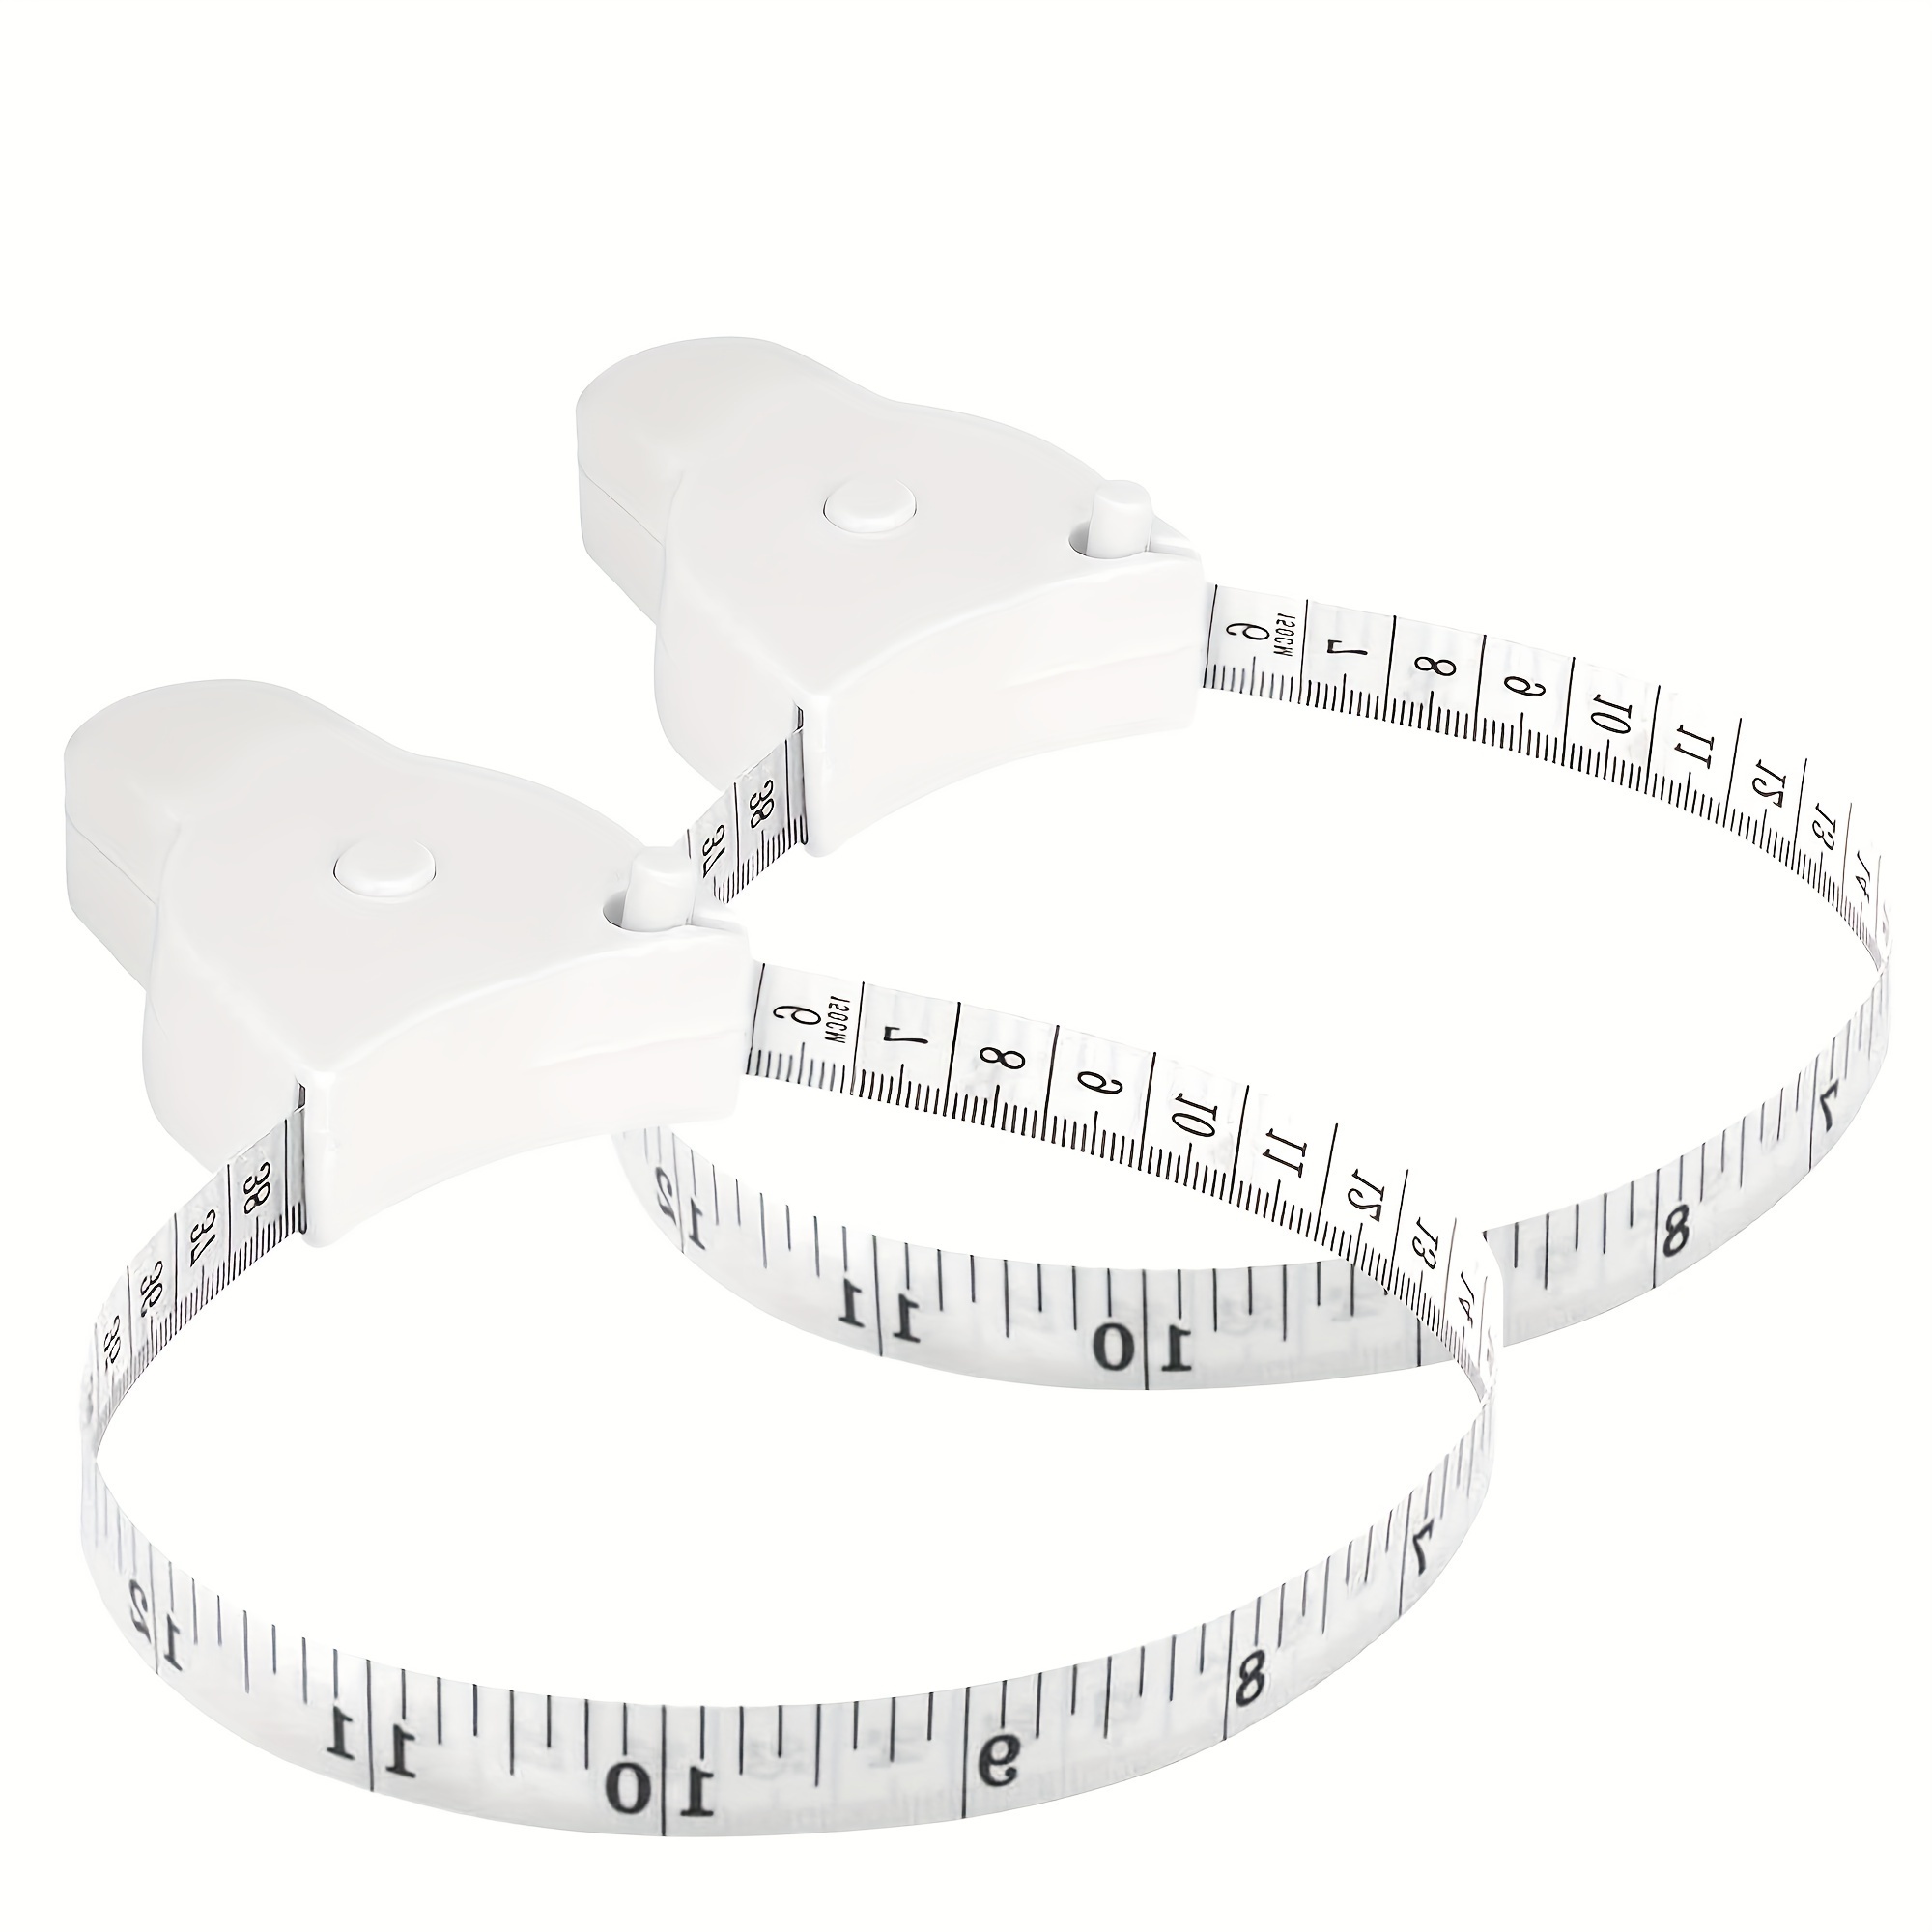  Cinta métrica para medir el cuerpo, cinta métrica de tela suave  de 120 pulgadas para medición de tela, regla a medida de doble escala para  pérdida de peso, medición médica, manualidades